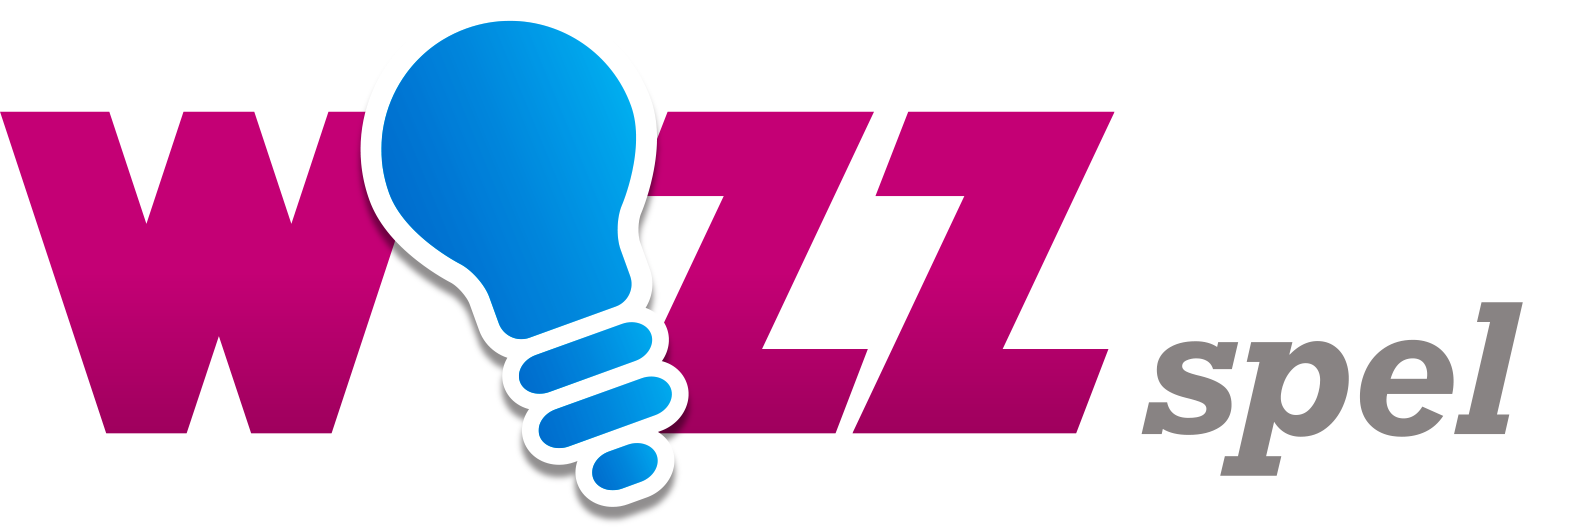 Wizz Spel